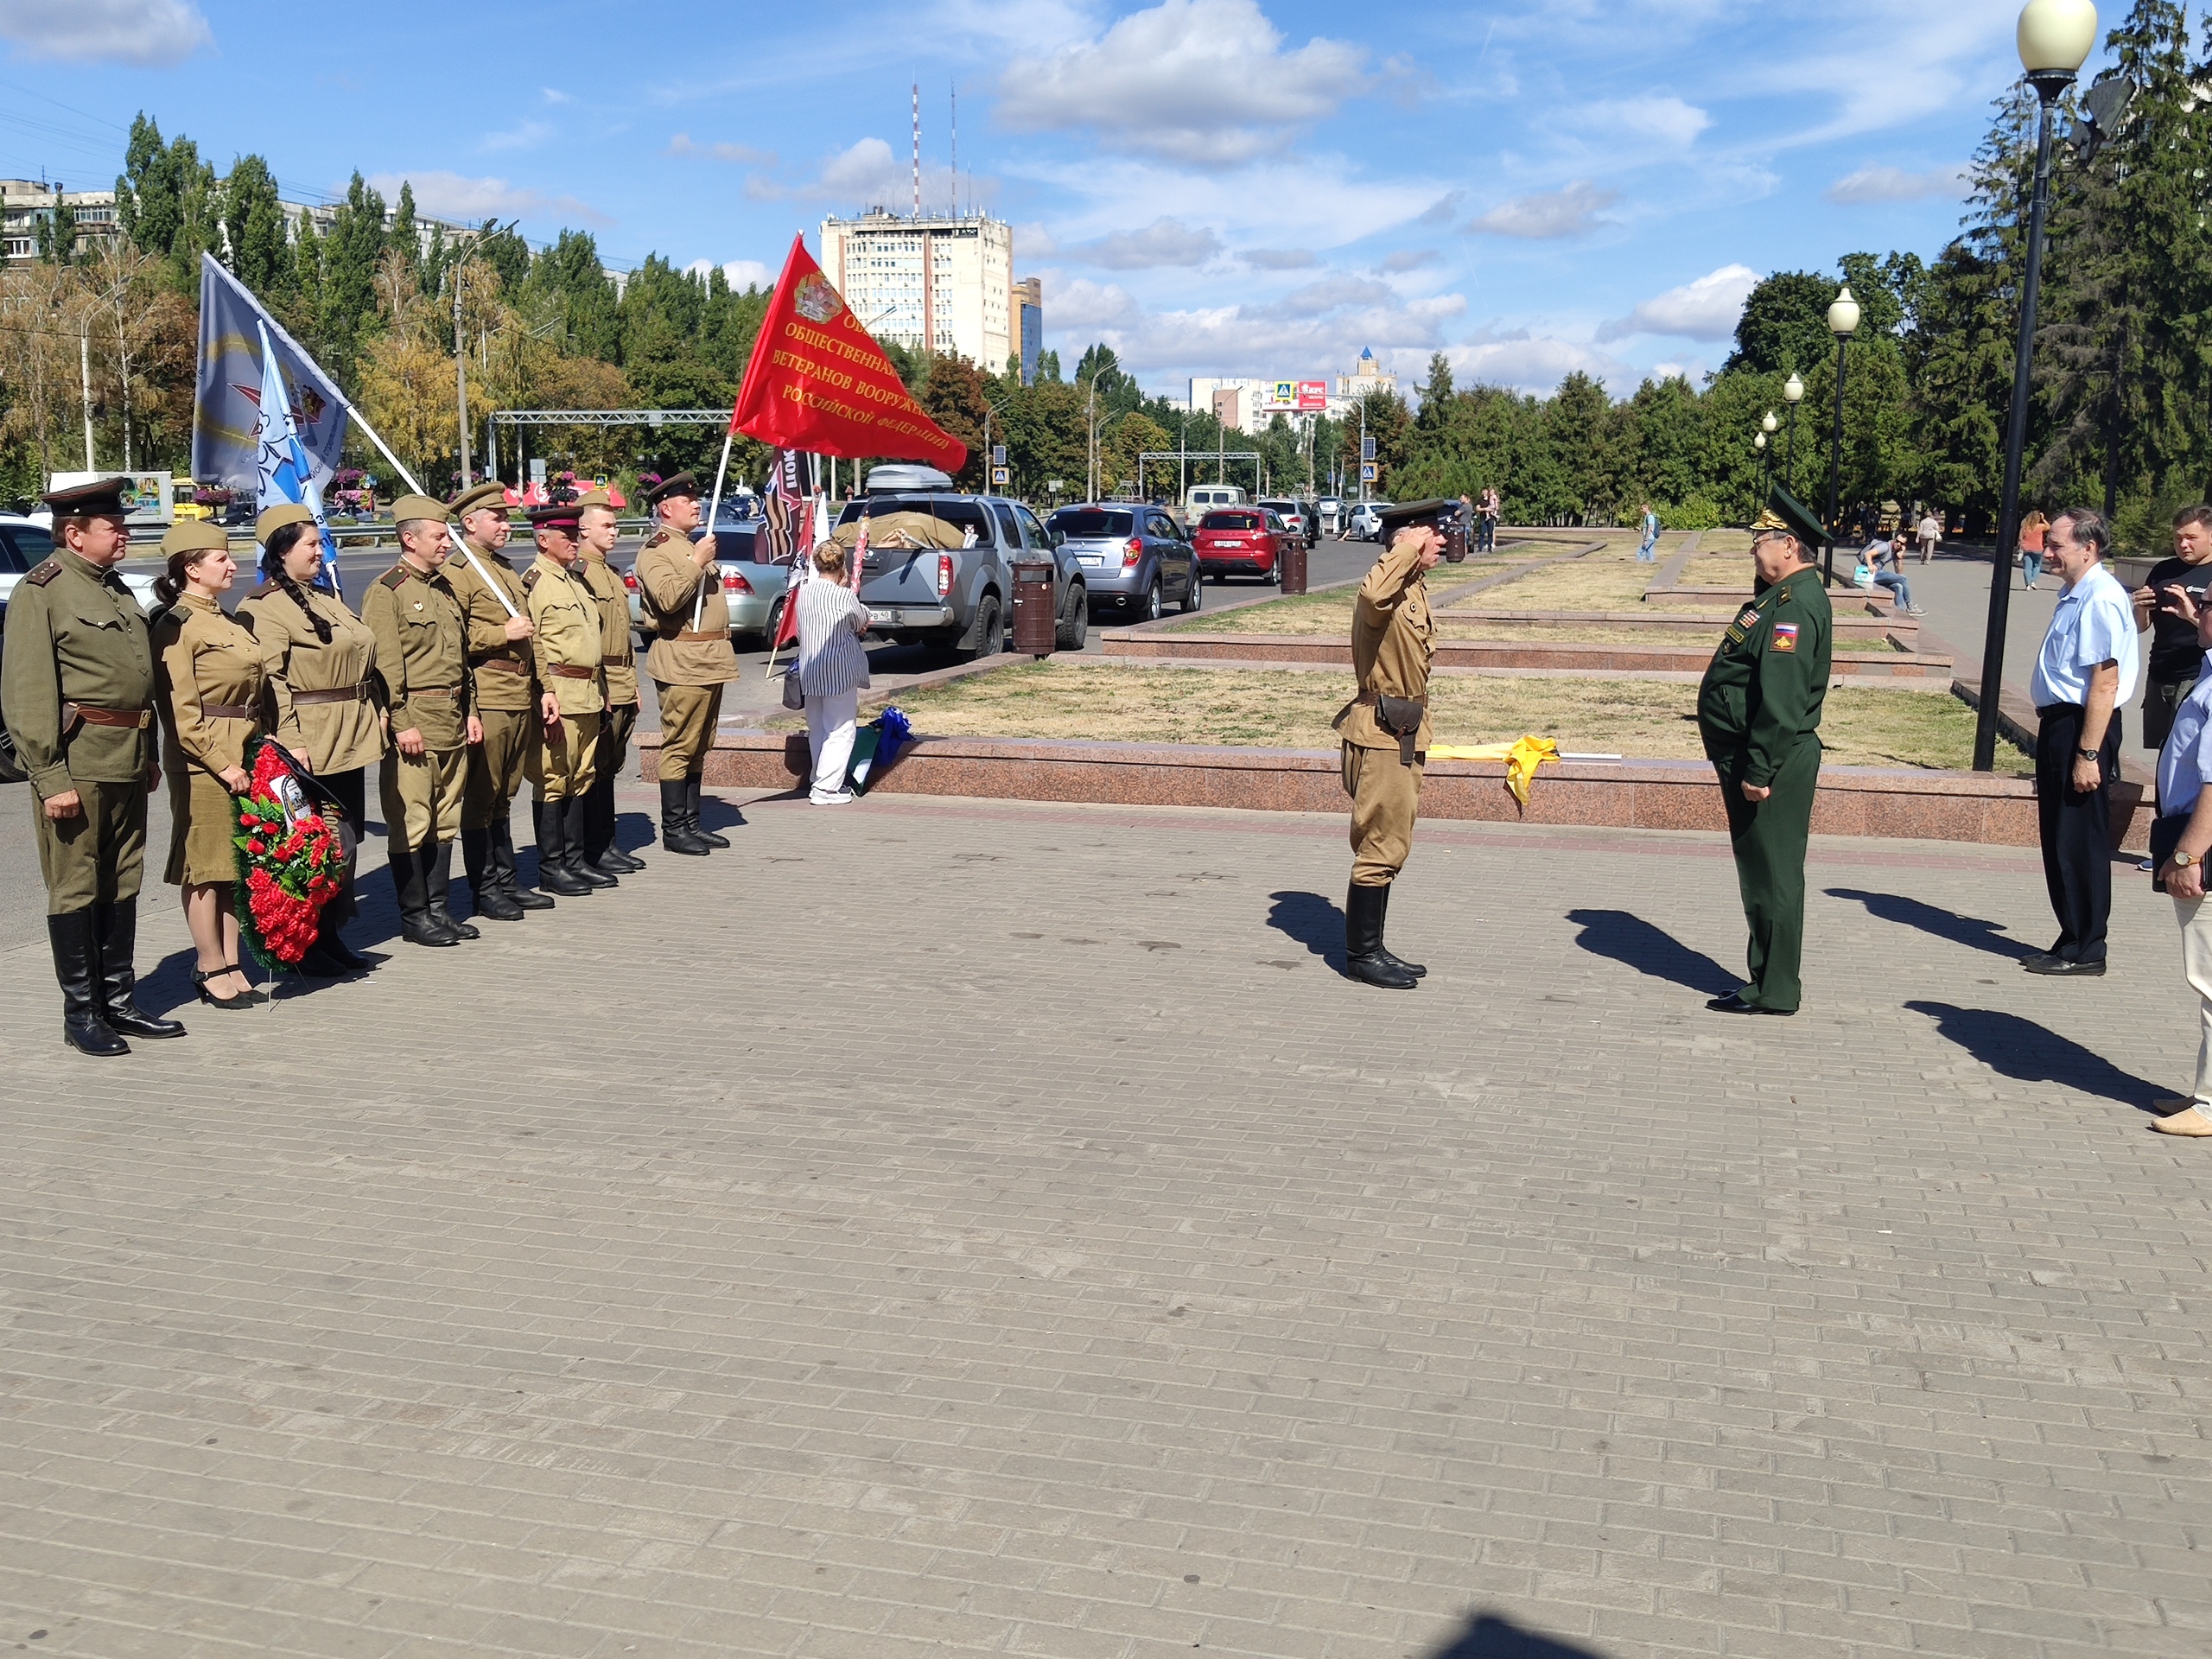 На Московском проспекте, в Ратном сквере, возле памятника Славы проведена наша первая торжественная церемония возложения венка в память павшим героям. 